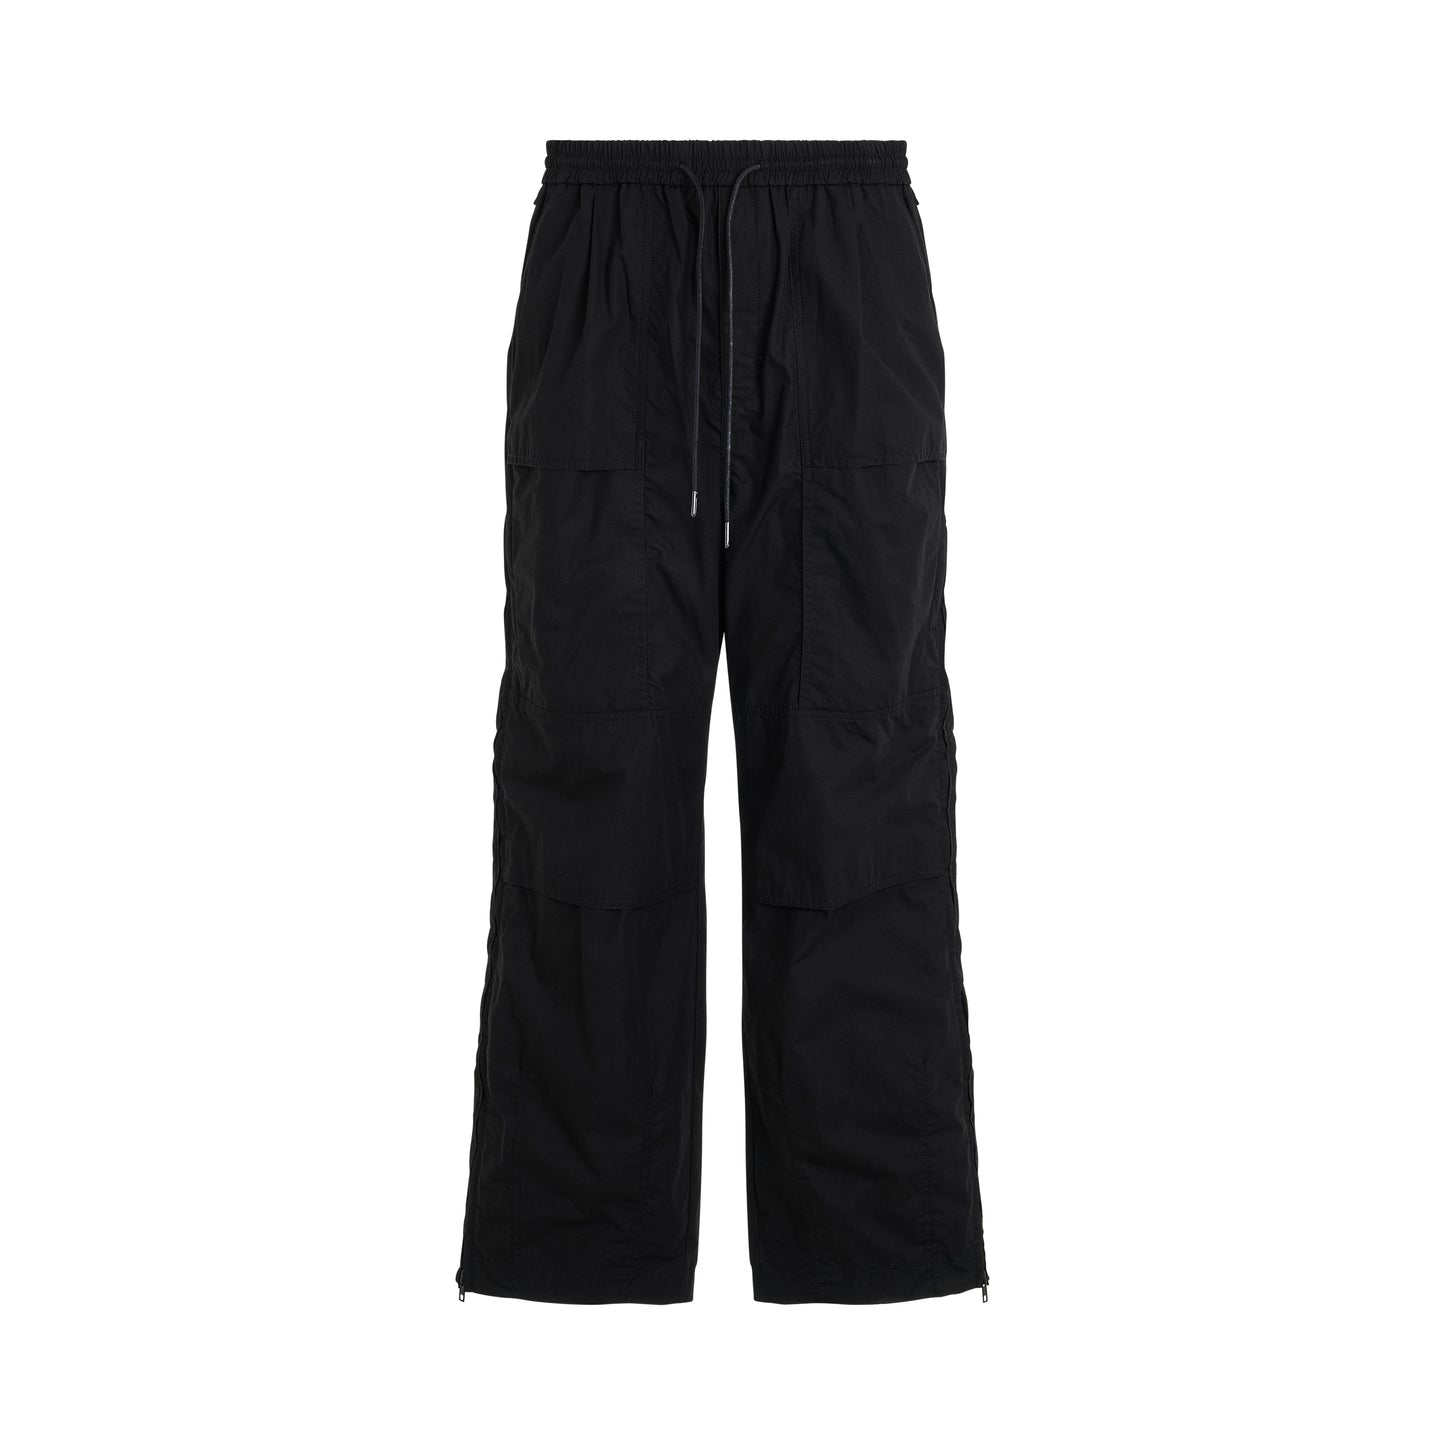 Cotton Side Zipper Pants in Black